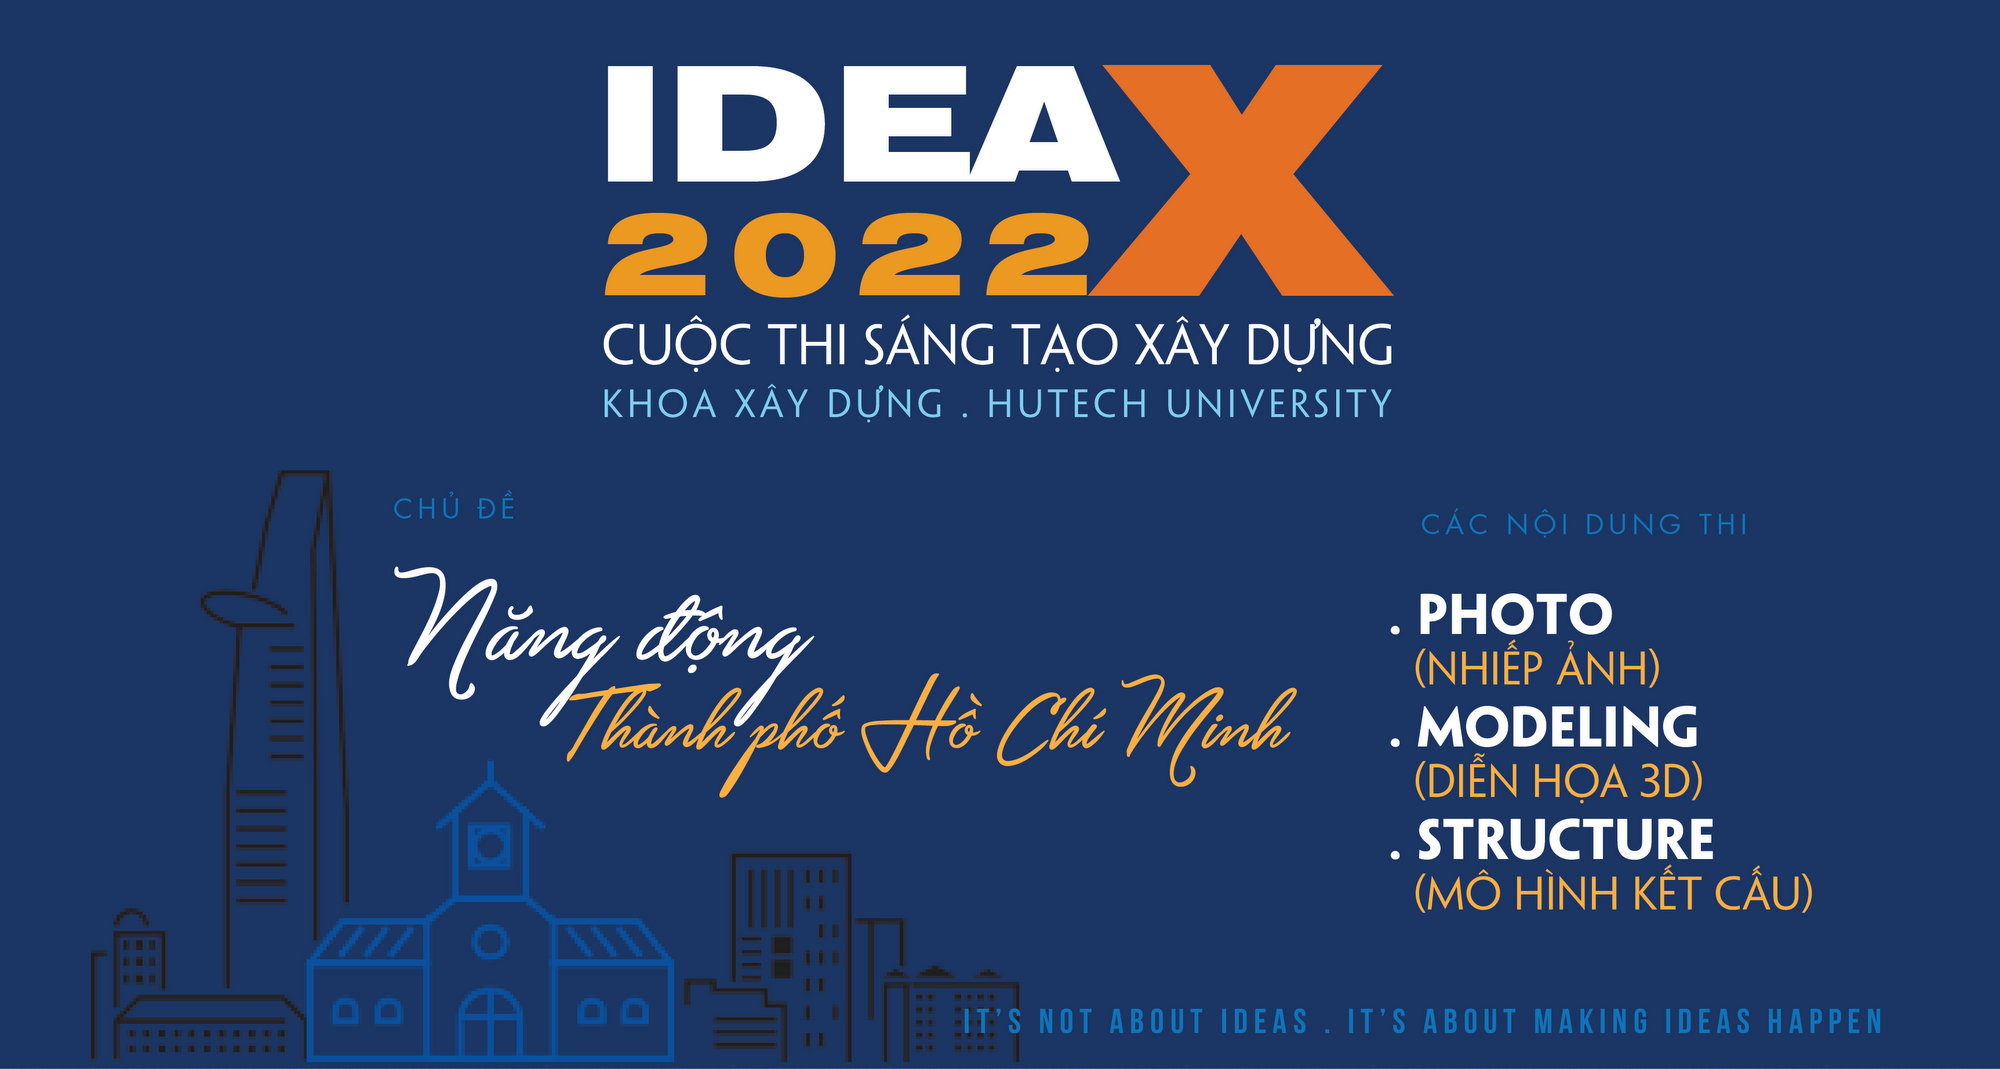 IDEA-X 2022 TRỞ LẠI VỚI CHỦ ĐỀ "NĂNG ĐỘNG TP HCM" 12